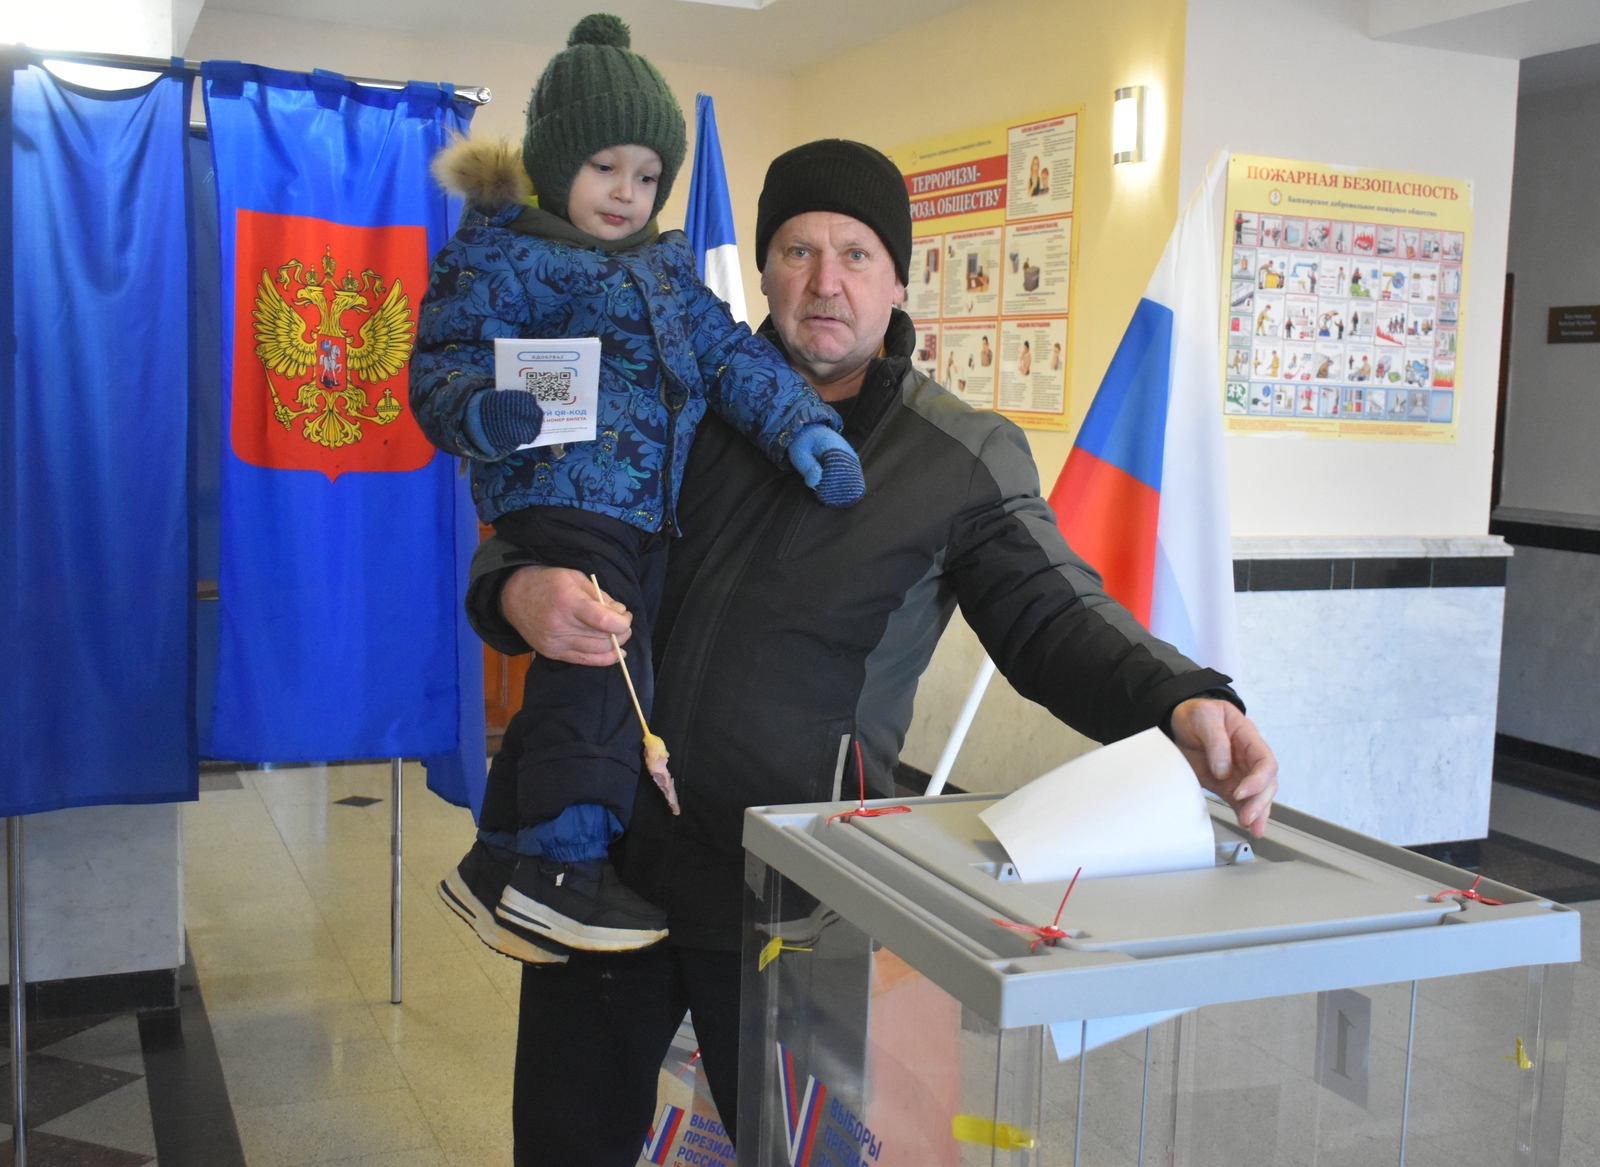 Месягутовец Сергей Парфенов пришел голосовать с внуком